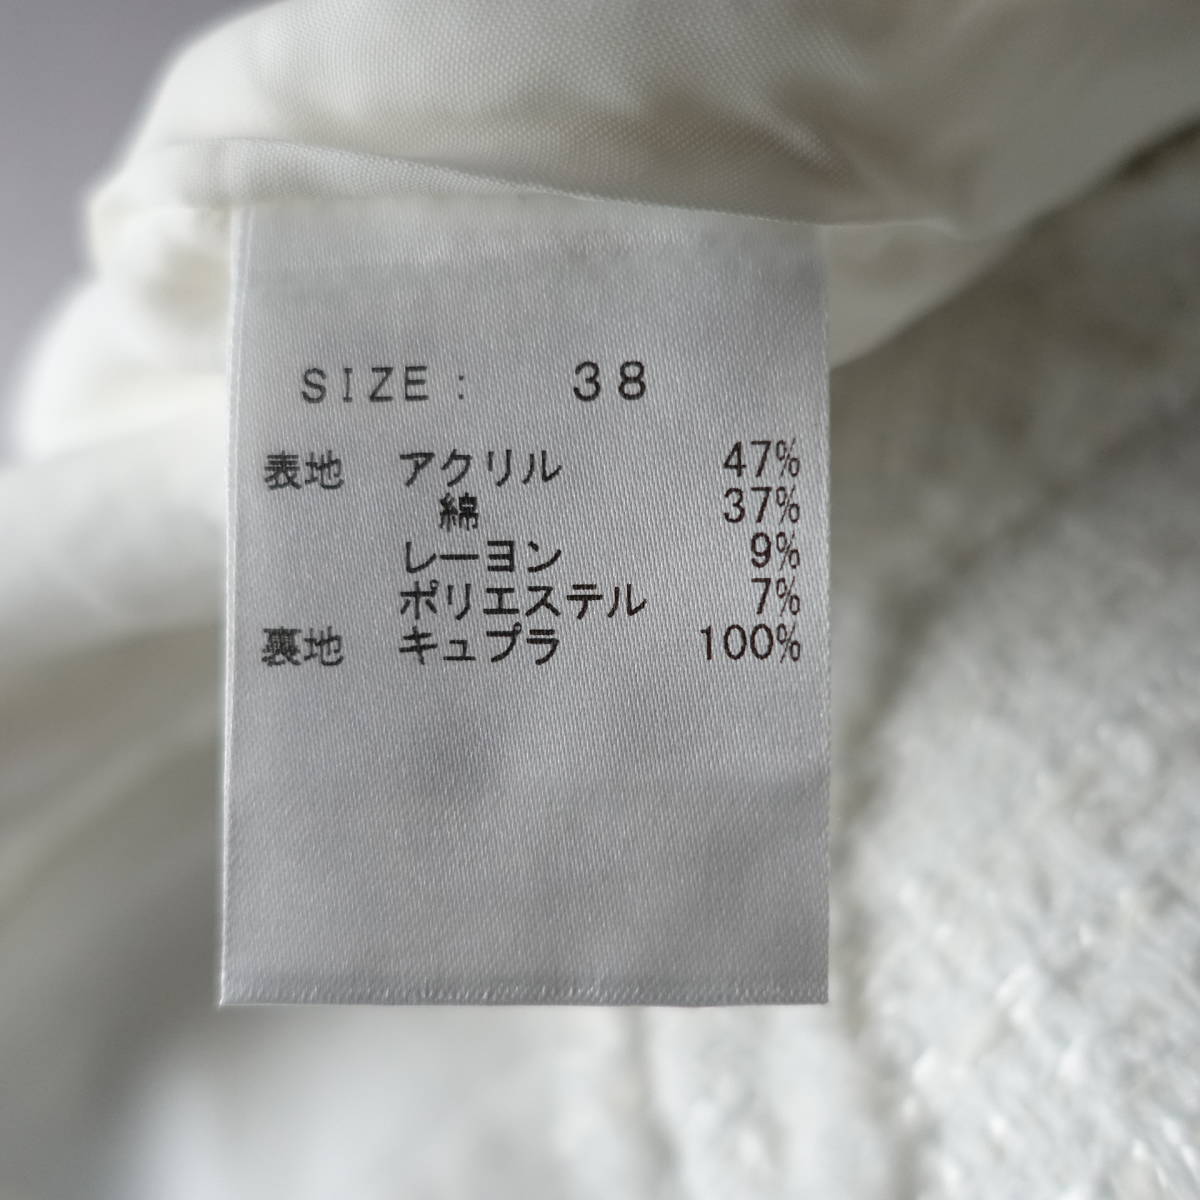  новый товар не использовался *KIYOMI SAITO/kiyomisa сахалинский таймень /38/ обычная цена 69,000 иен + налог /BARNEYS NEW YORK/ Barneys New York / сделано в Японии жакет / белый / белый 